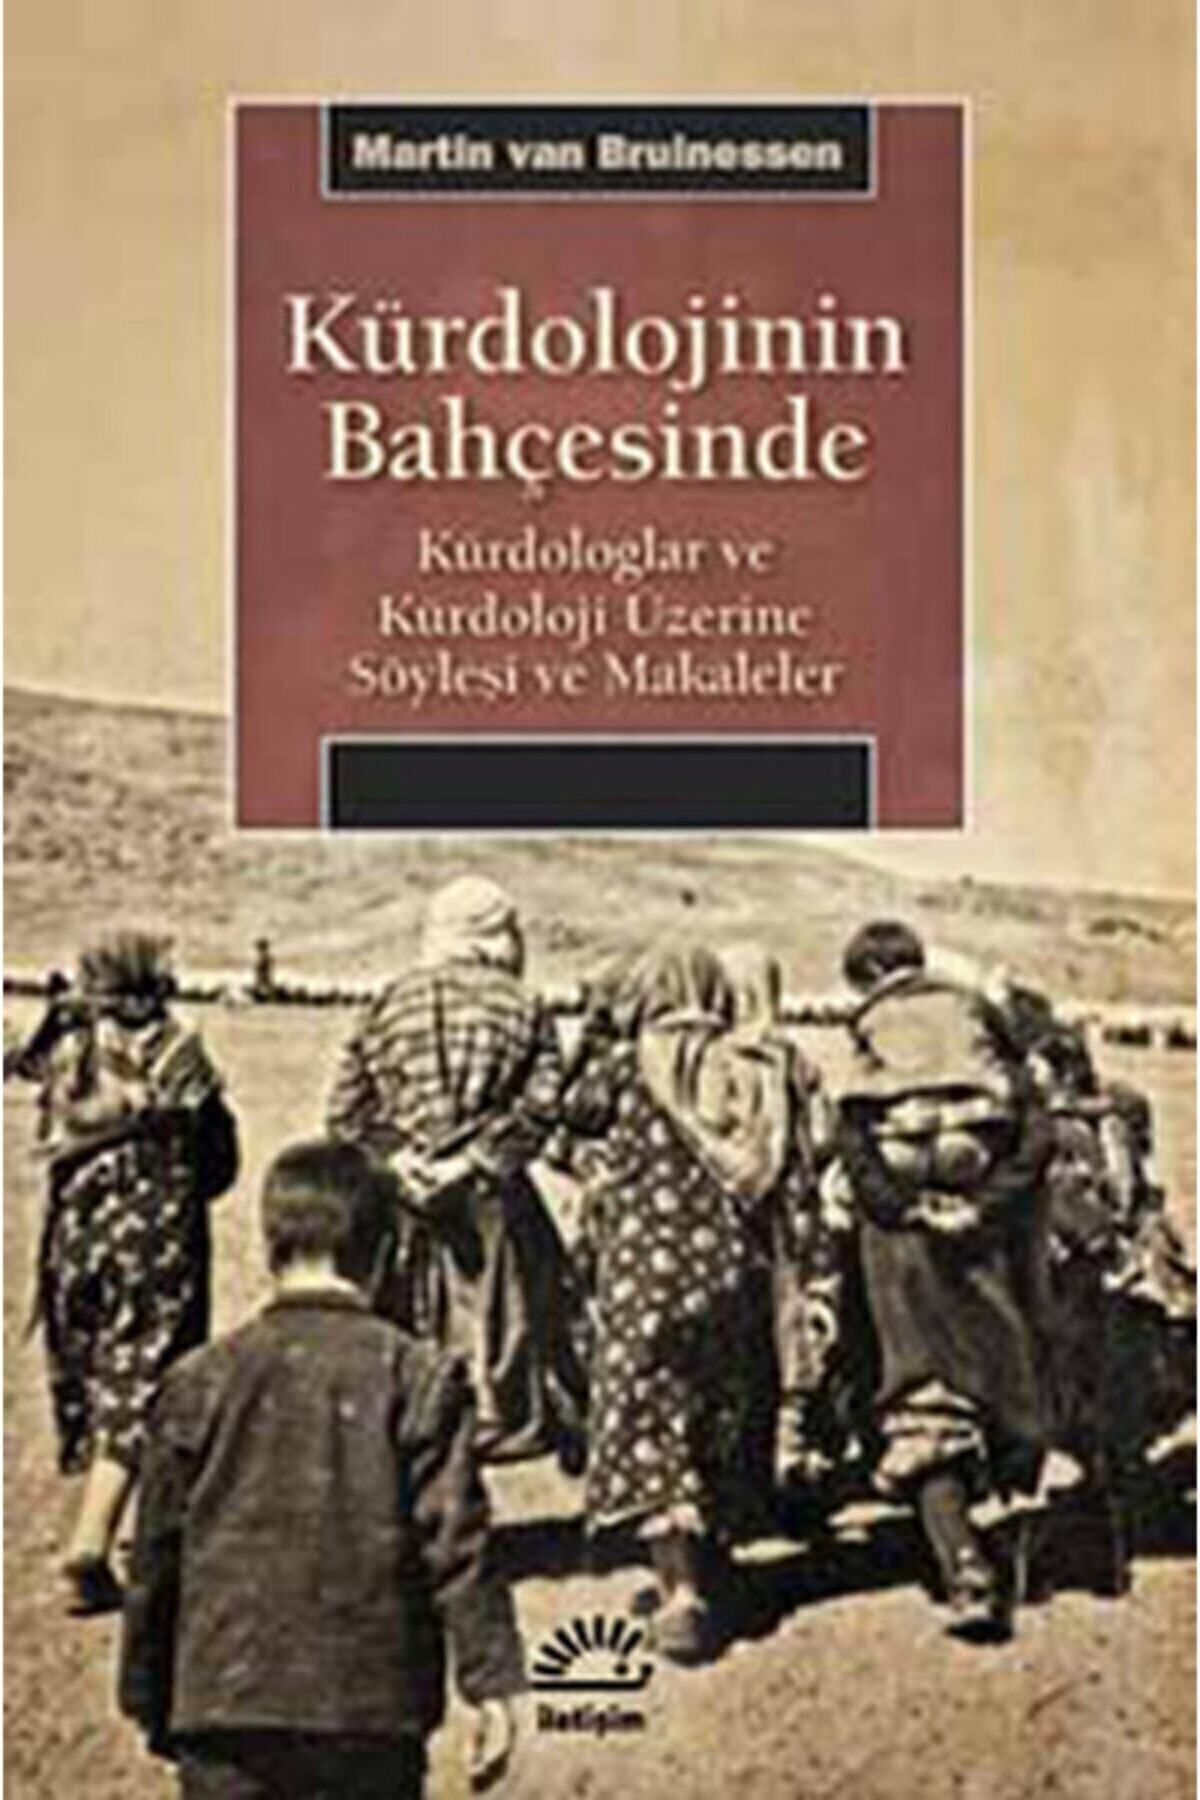 İletişim Yayınları Kürdolojinin Bahçesinde Kürdologlar ve Kürdoloji Üzerine Söyleşi ve Makaleler